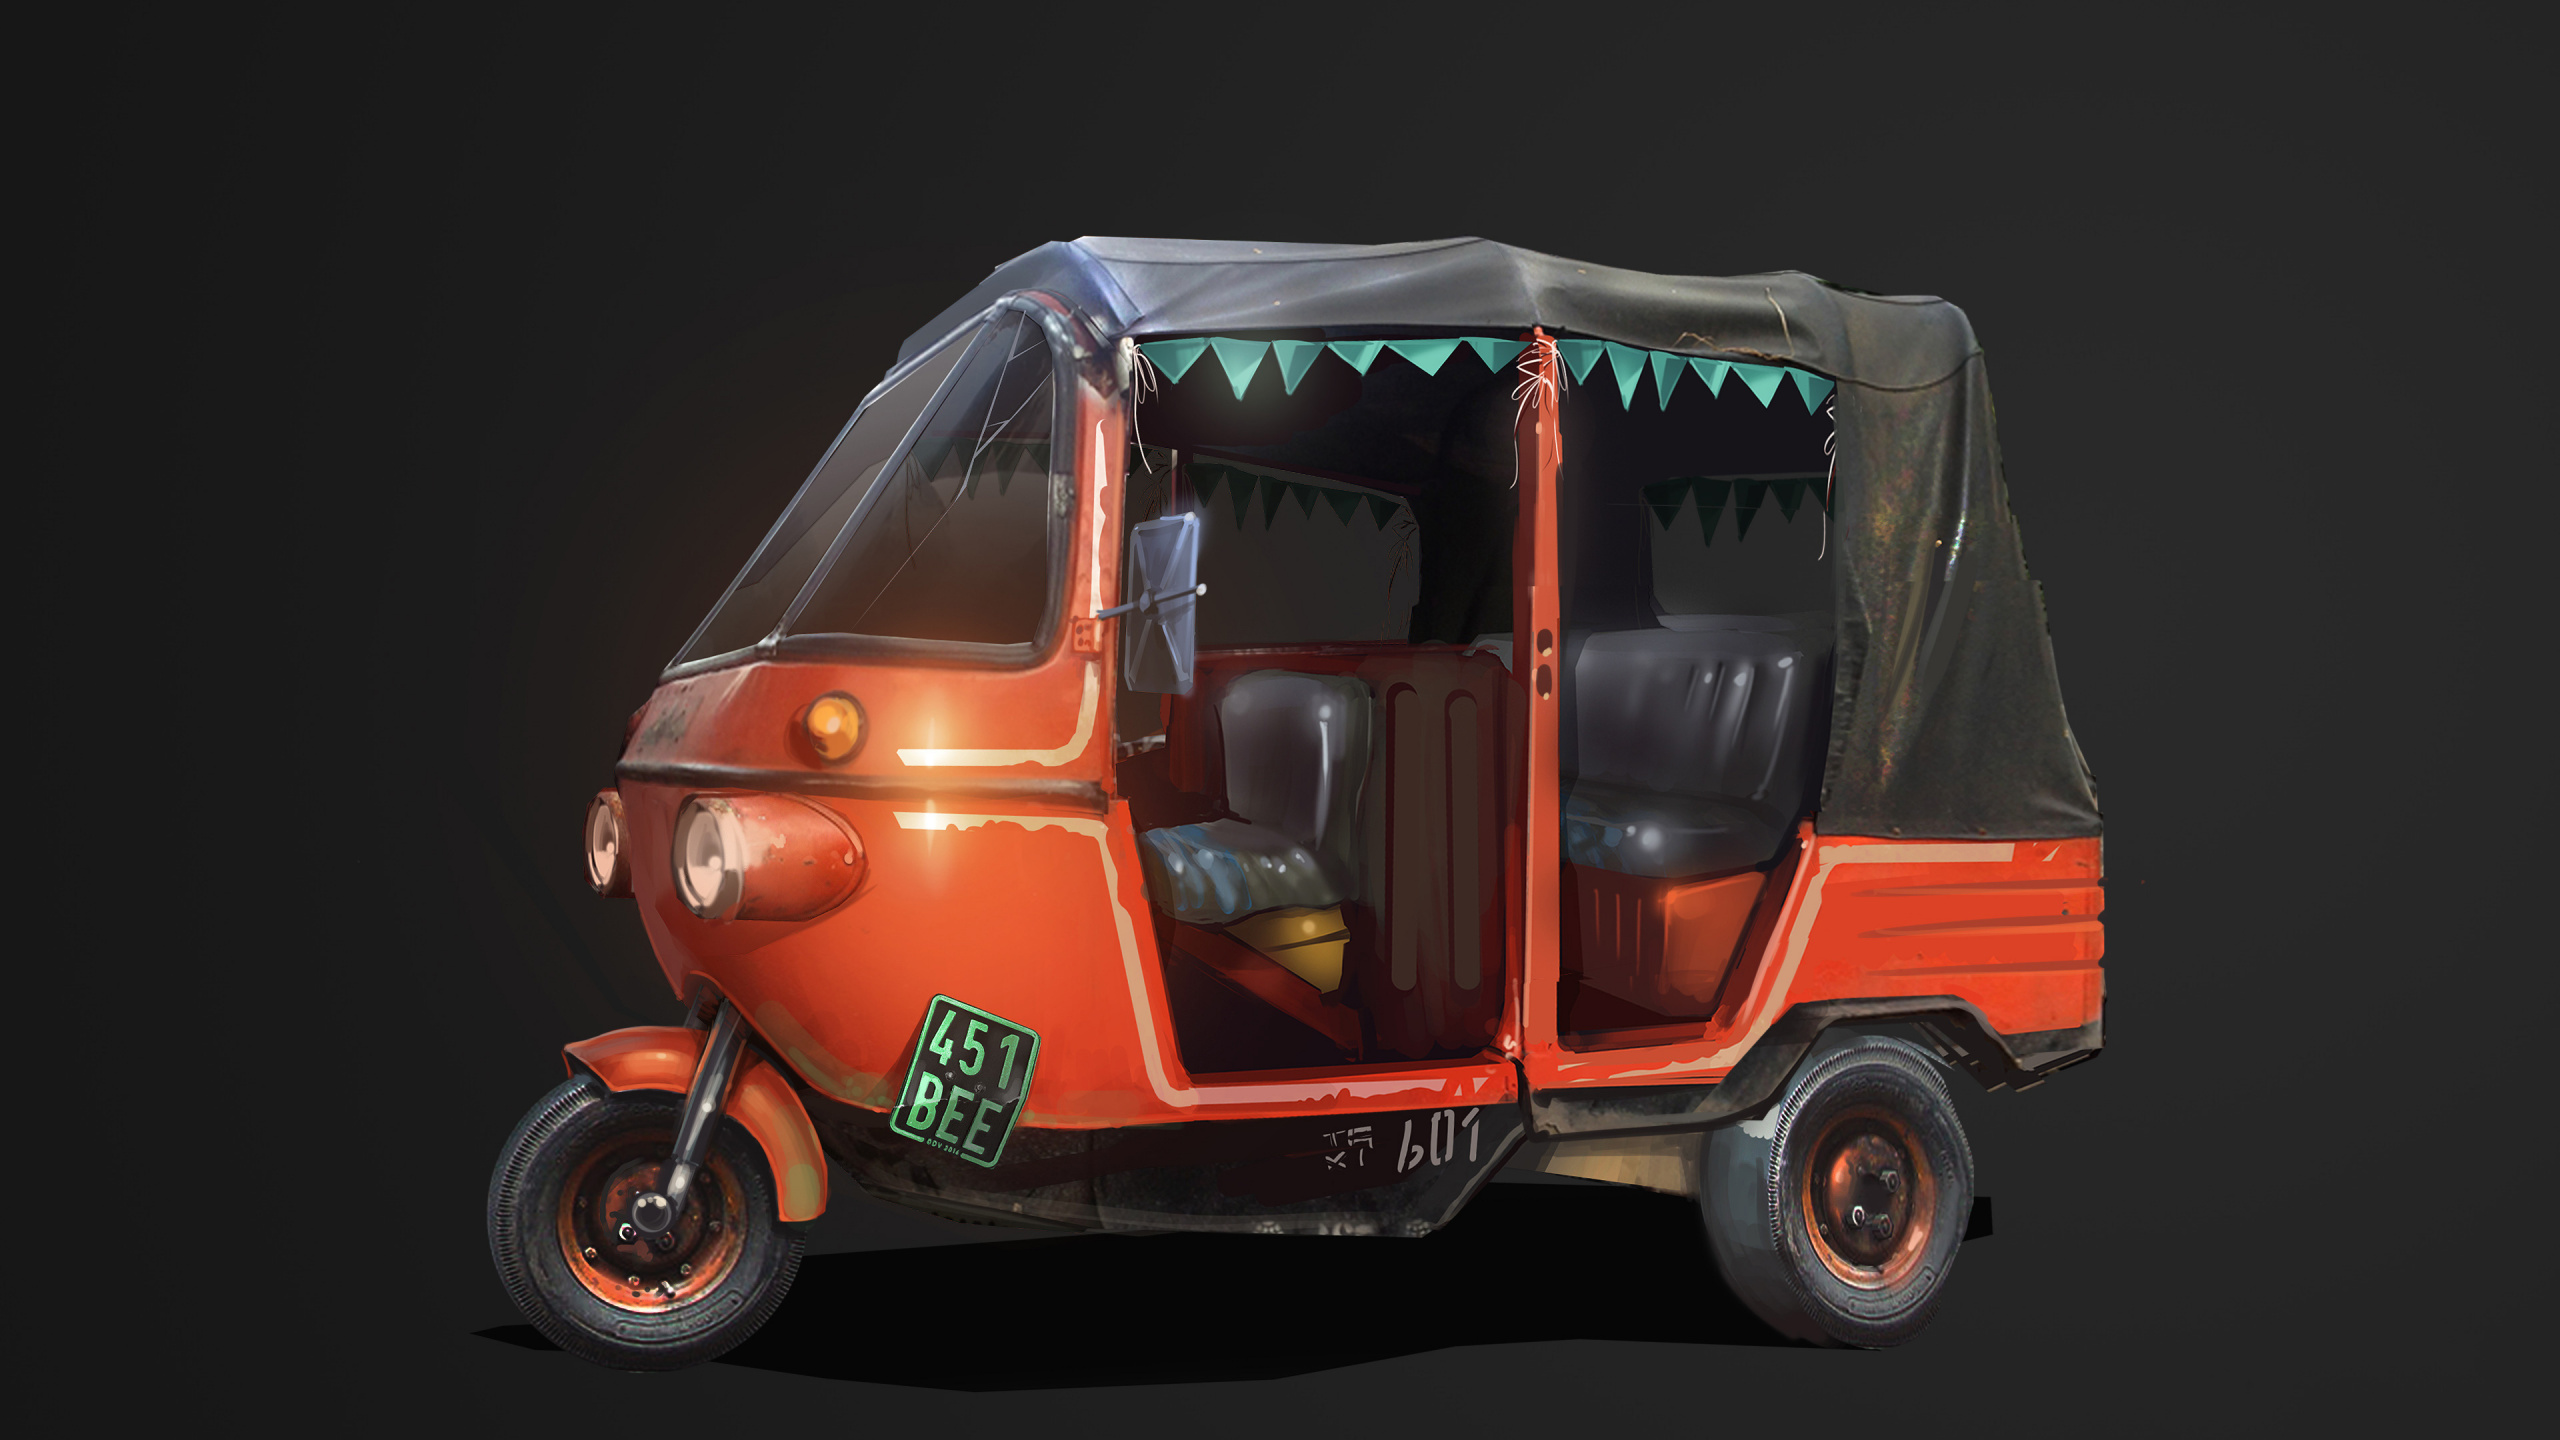 Rickshaw Automático Rojo y Negro. Wallpaper in 2560x1440 Resolution